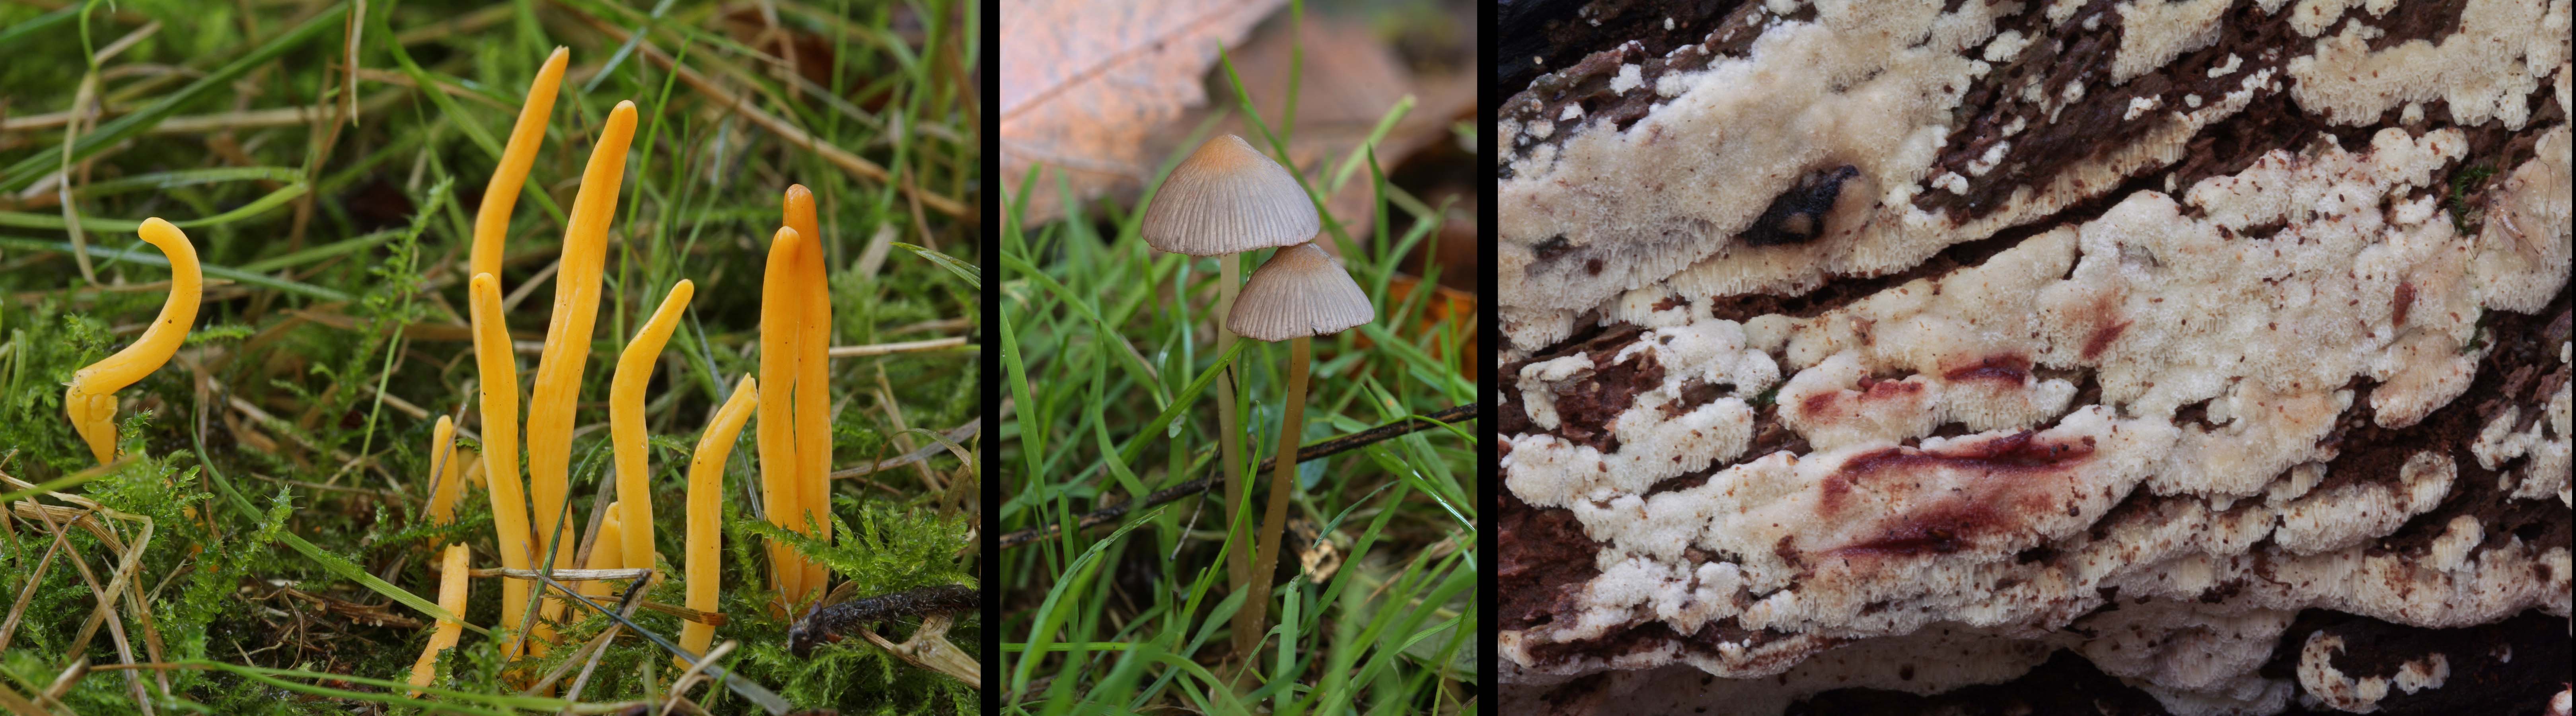 paddenstoelen excursie(©Sjoerd Greydanus)